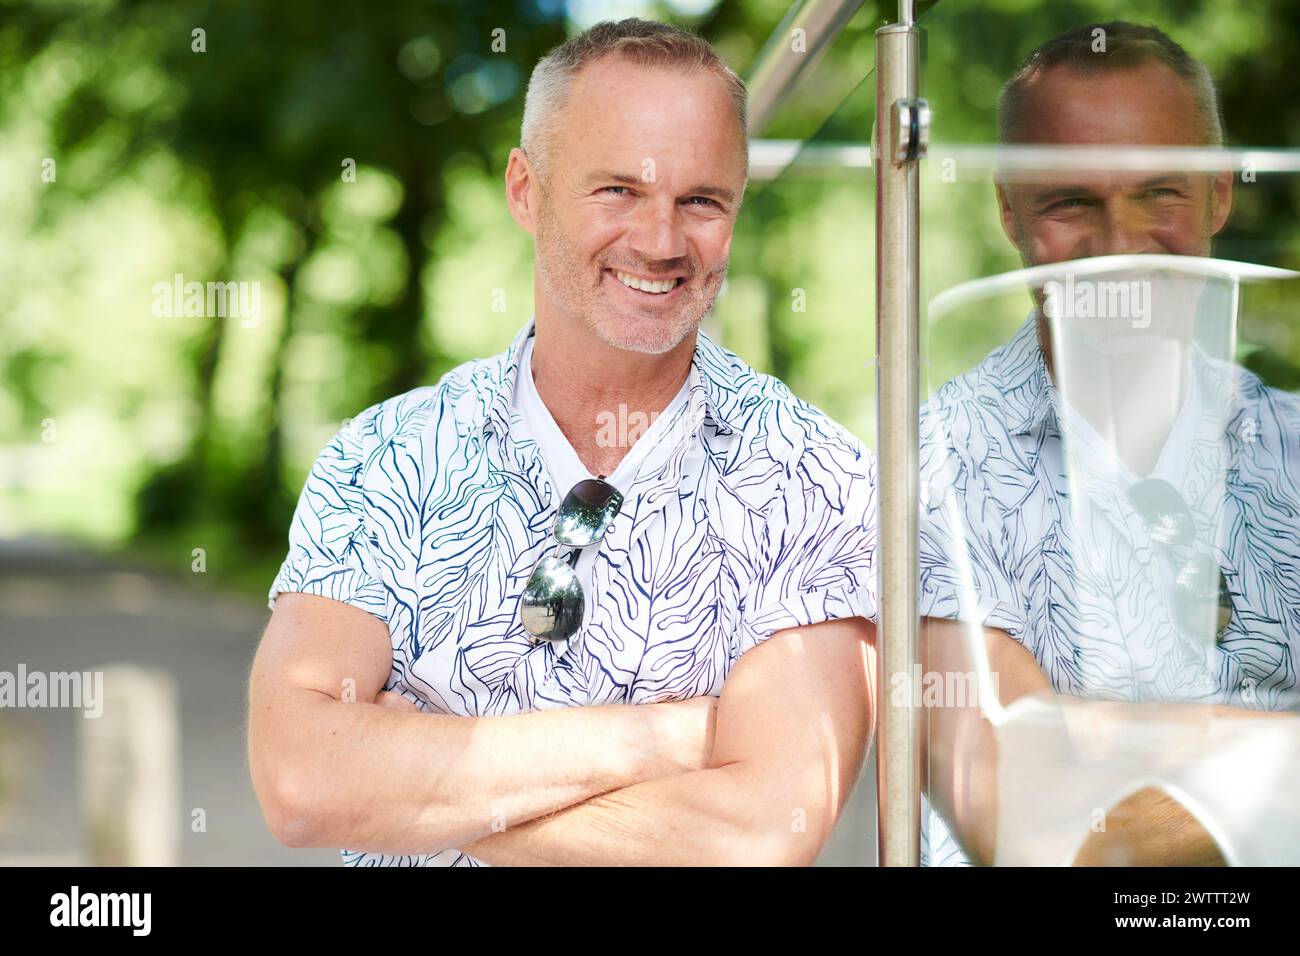 Ein lächelnder Mann in einem gemusterten Hemd, der sich auf eine Glasscheibe stützt. Stockfoto